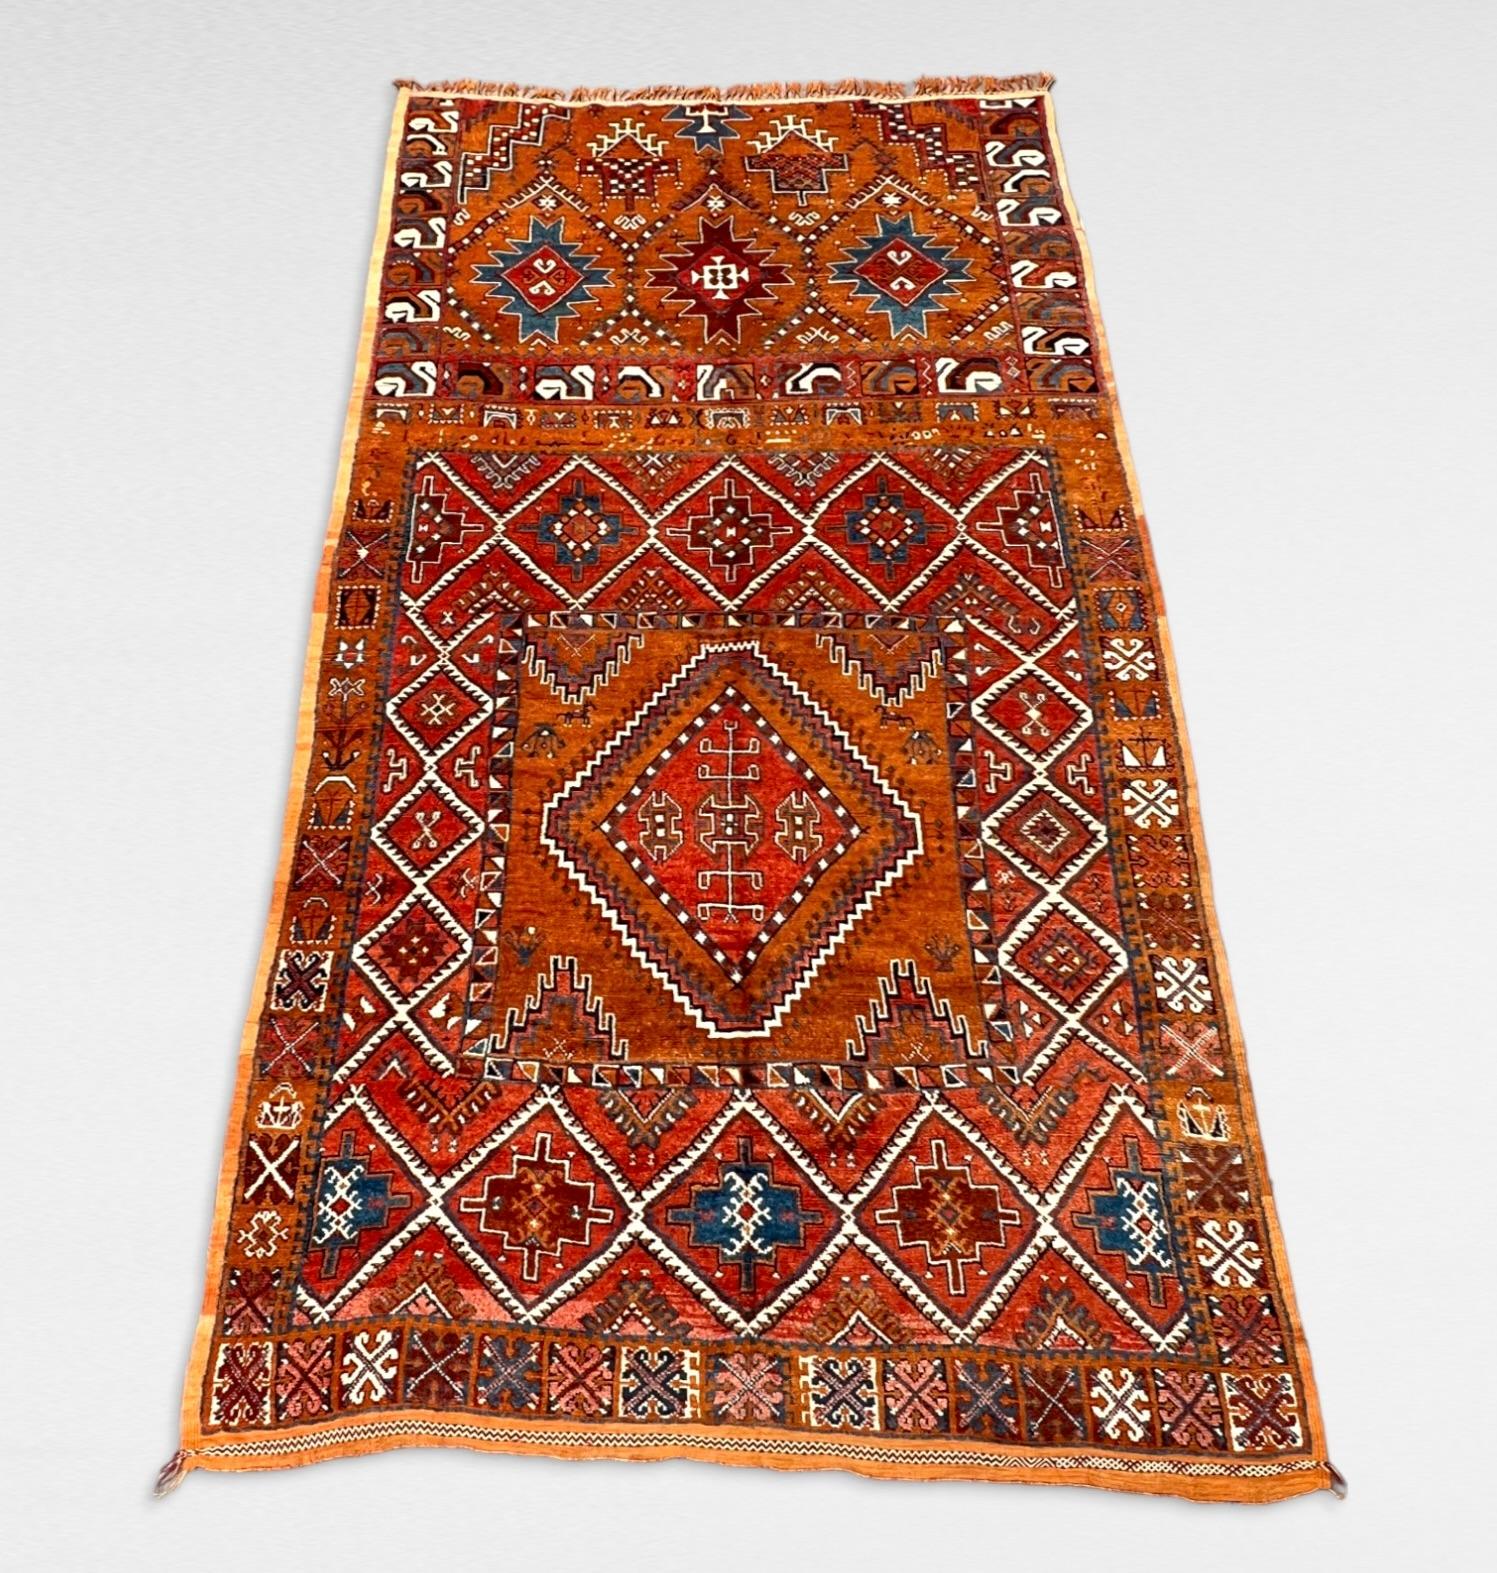 Ein Sammlerstück.

Seltener handgefertigter marokkanischer Taznakht-Wollteppich von 1940.
Dieser exquisite Wollteppich wurde von Stämmen der angesehenen Stammeskonföderation Ait Ouaouzguite hergestellt und stammt aus der mystischen Region Jbel